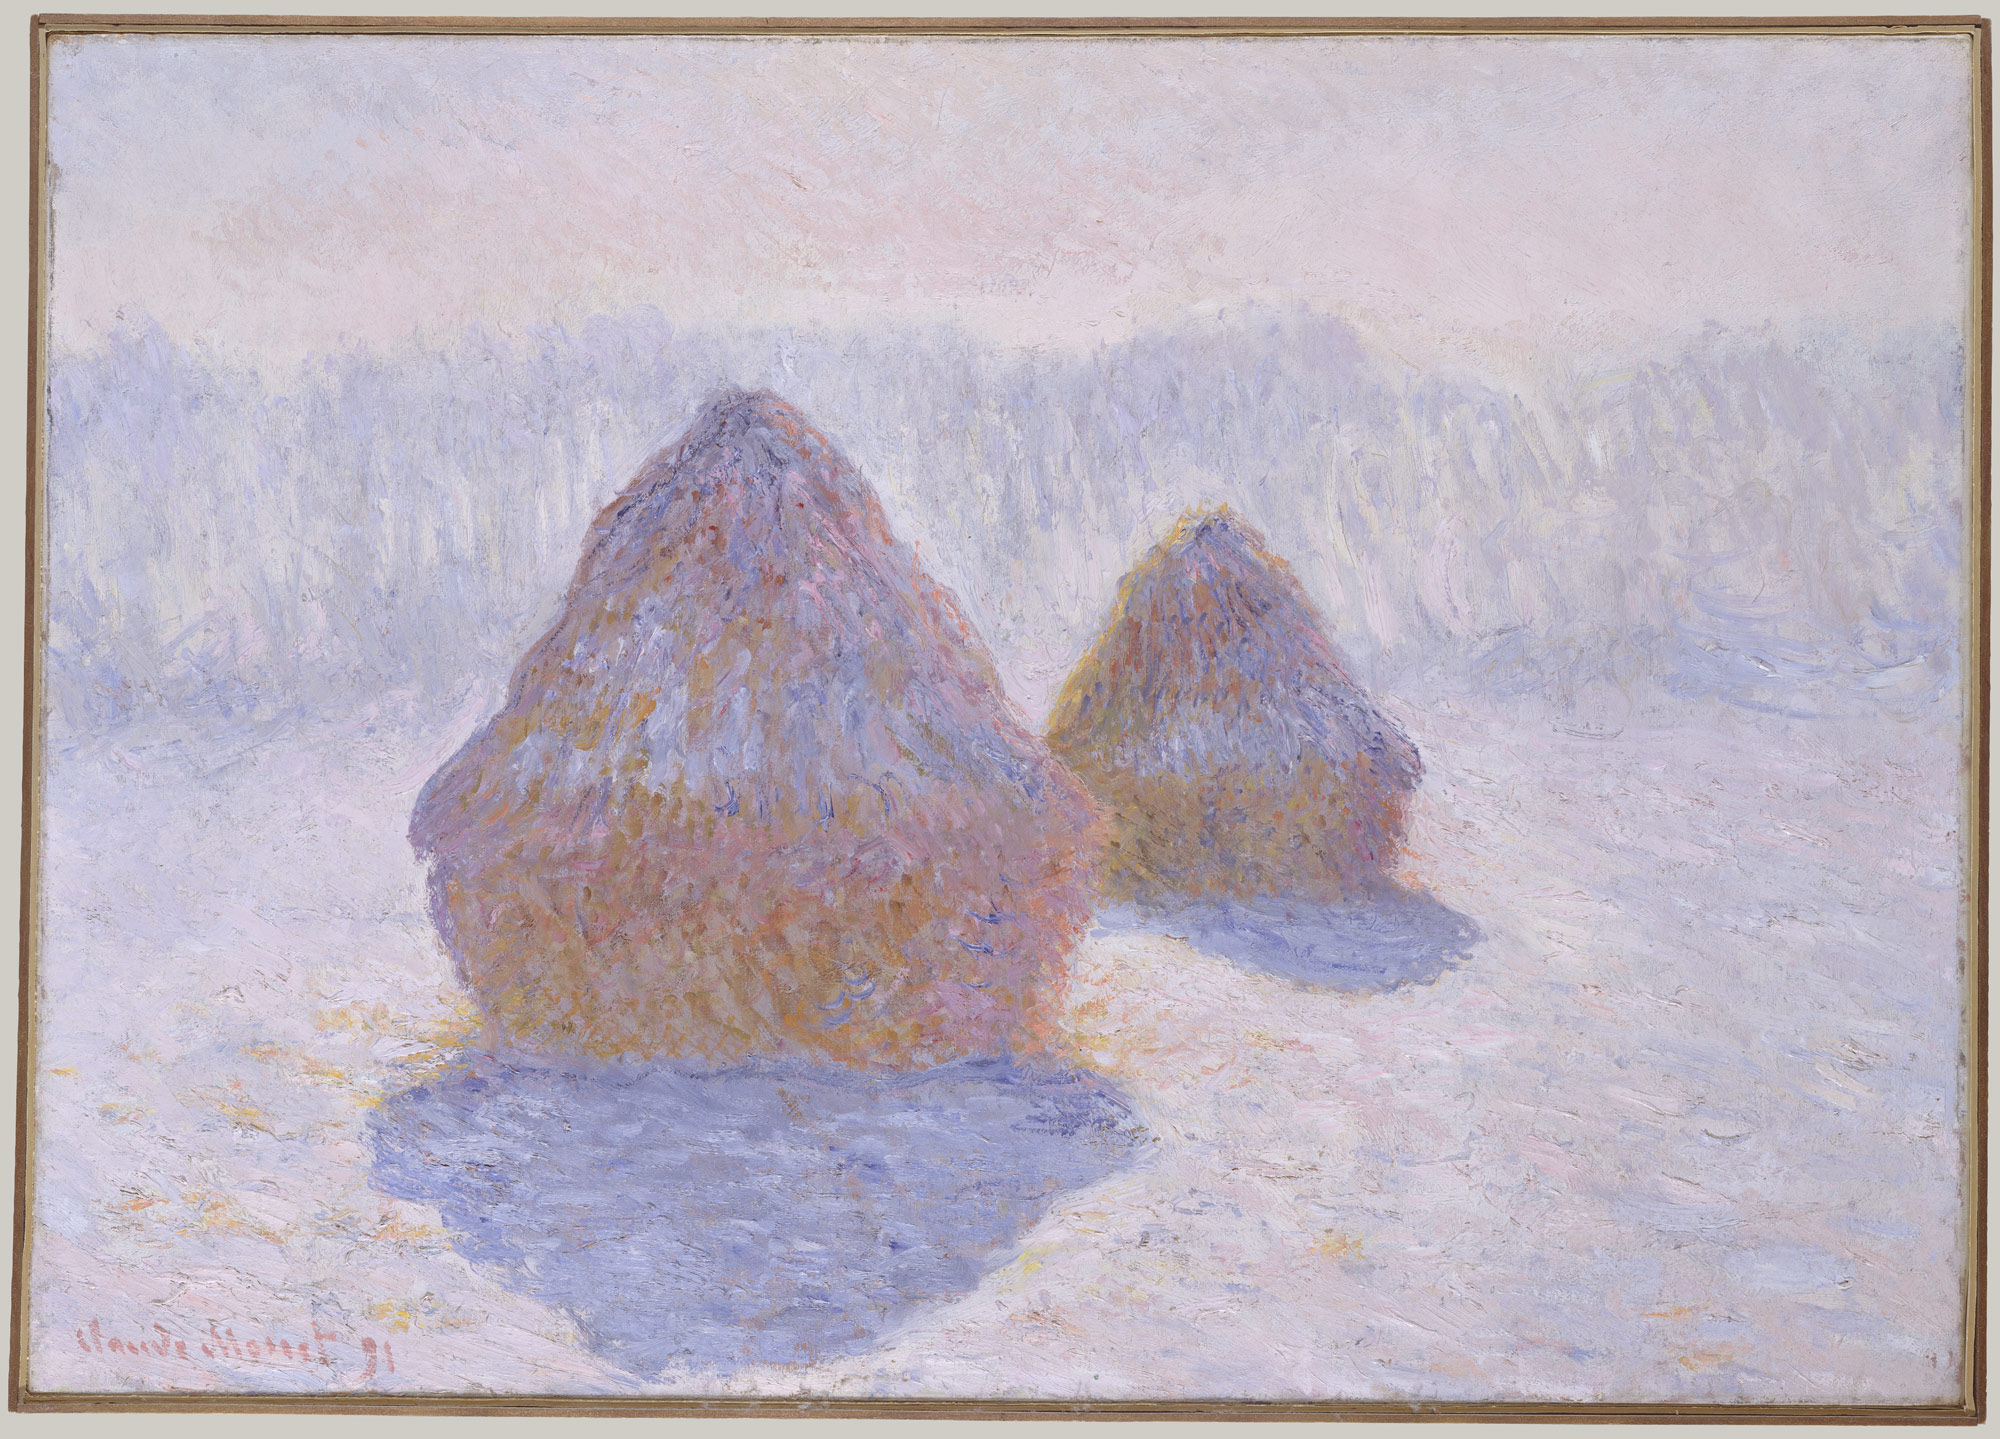 (أكوام التبن (تأثير الثلج والشمس by Claude Monet - 1891م - 65.4 x 92.1 cm 